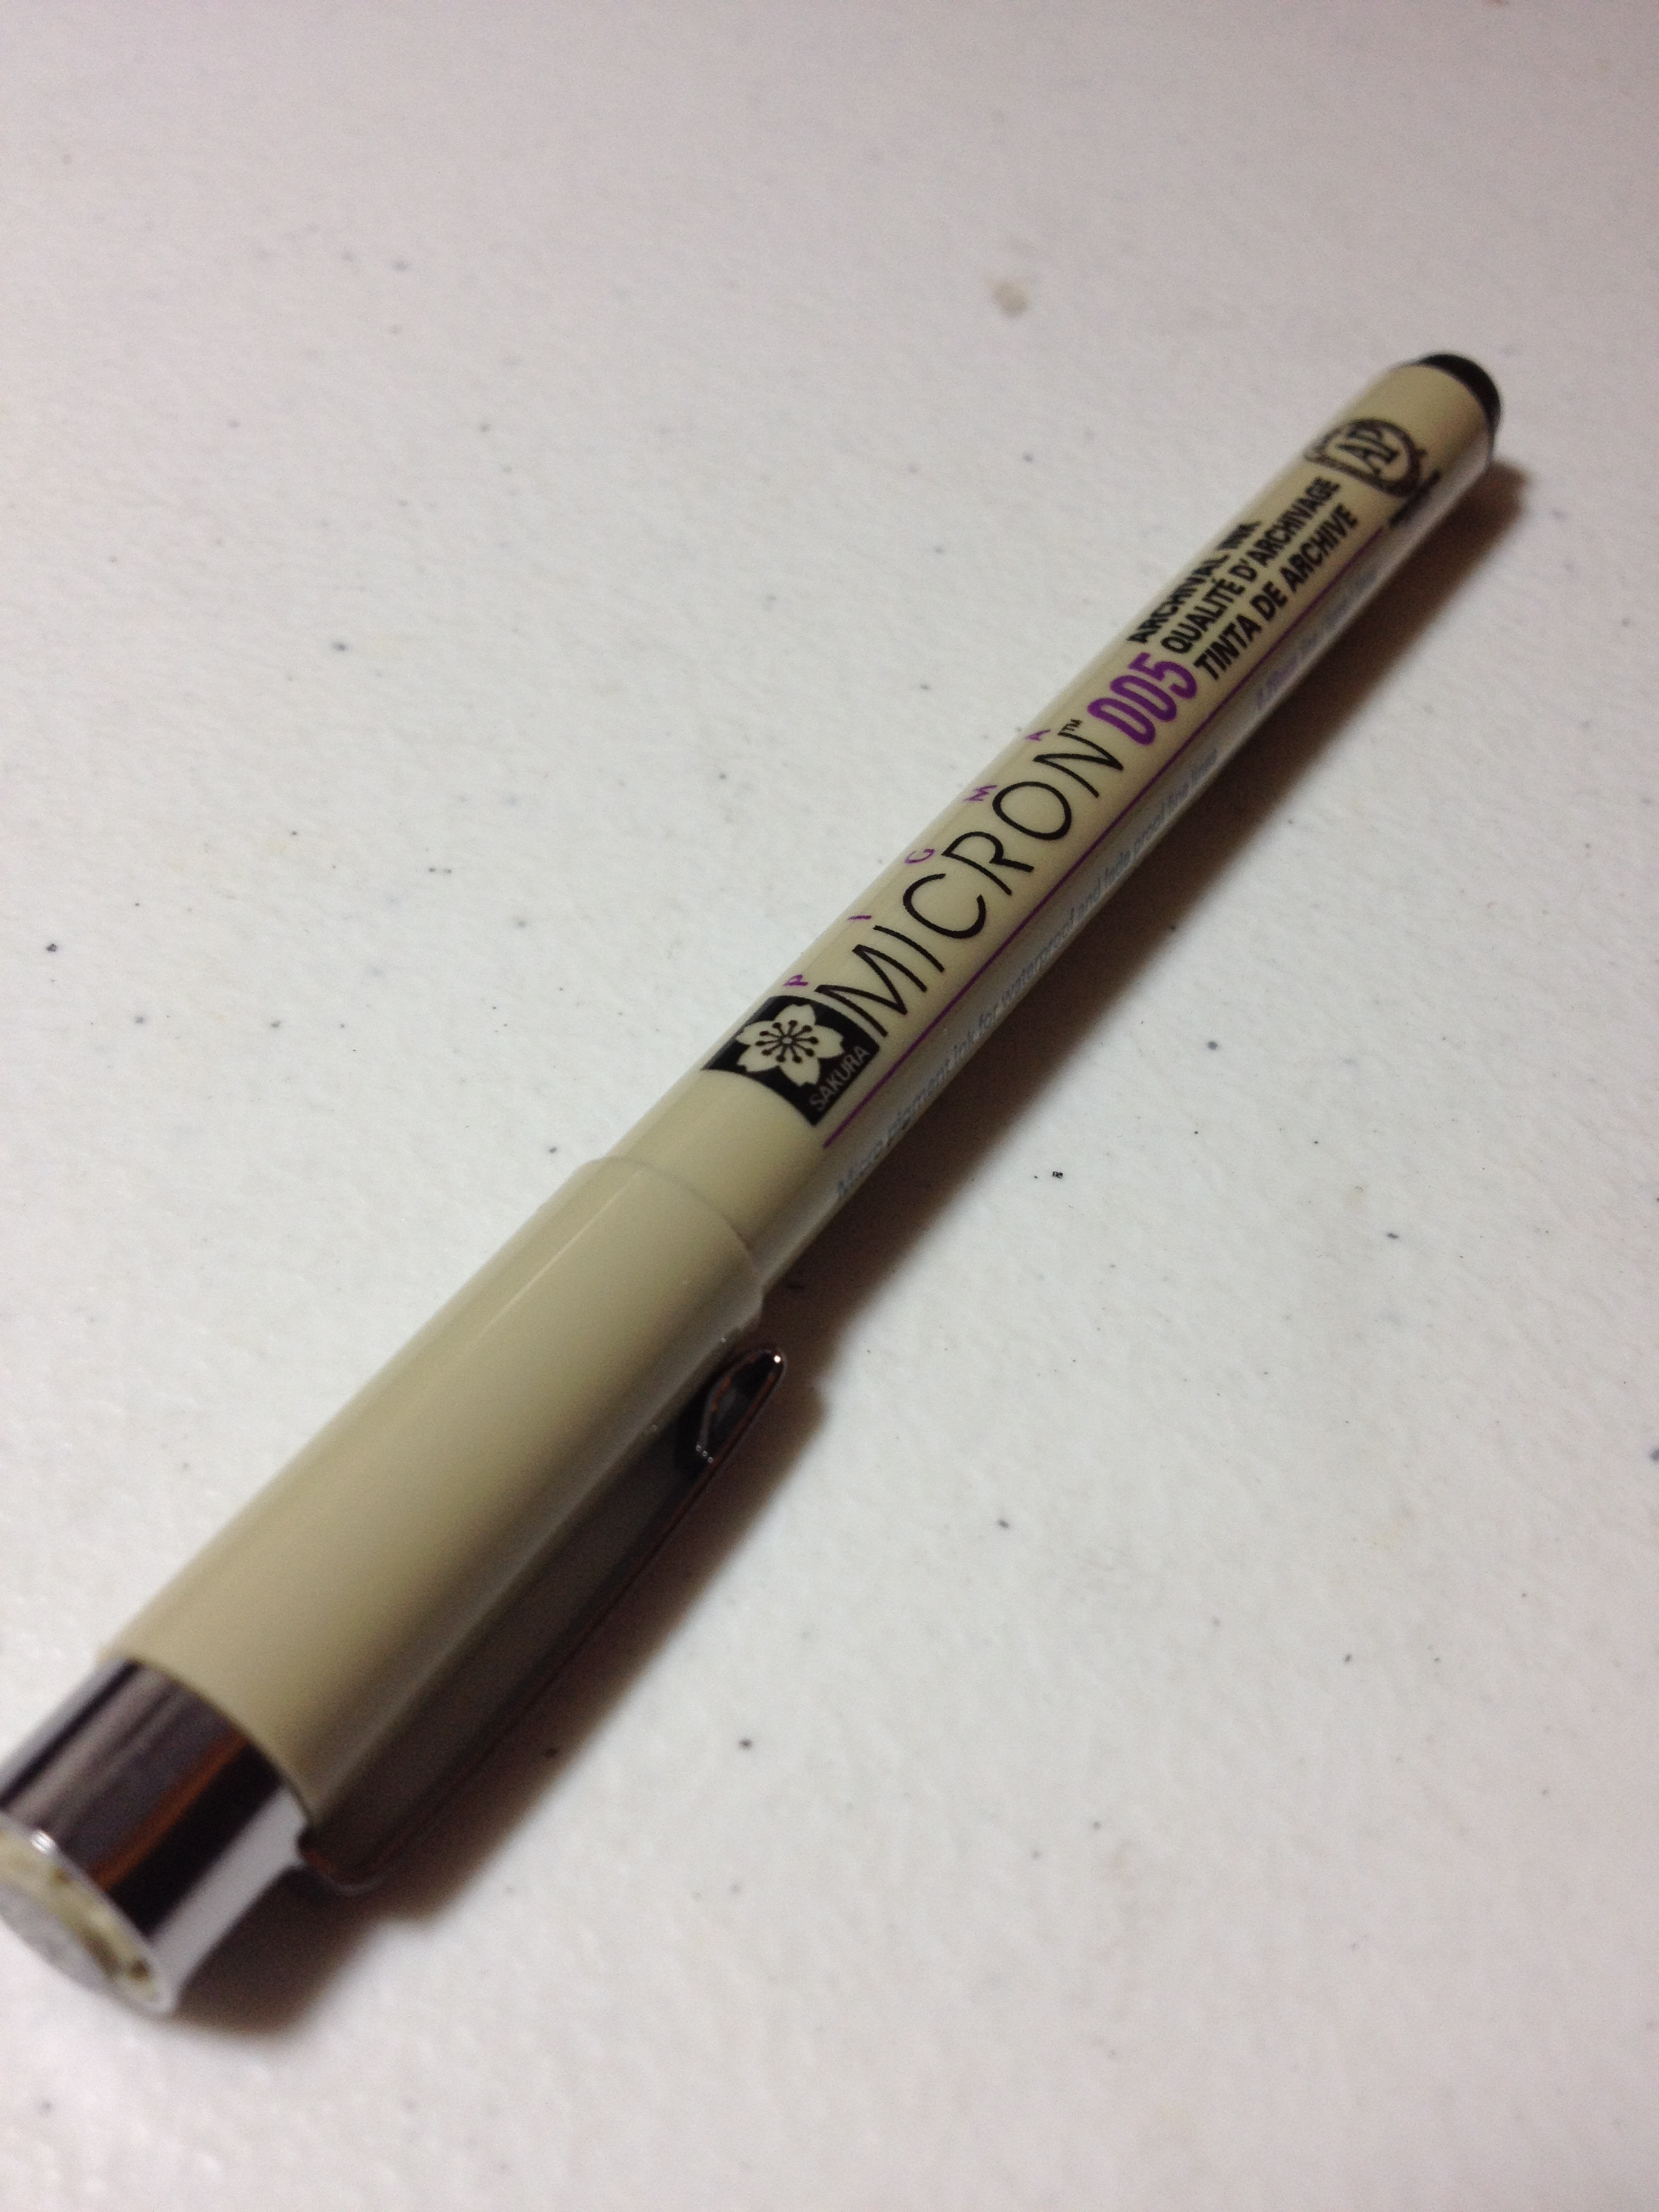 Review – Sakura Micron 005 Technical Pen